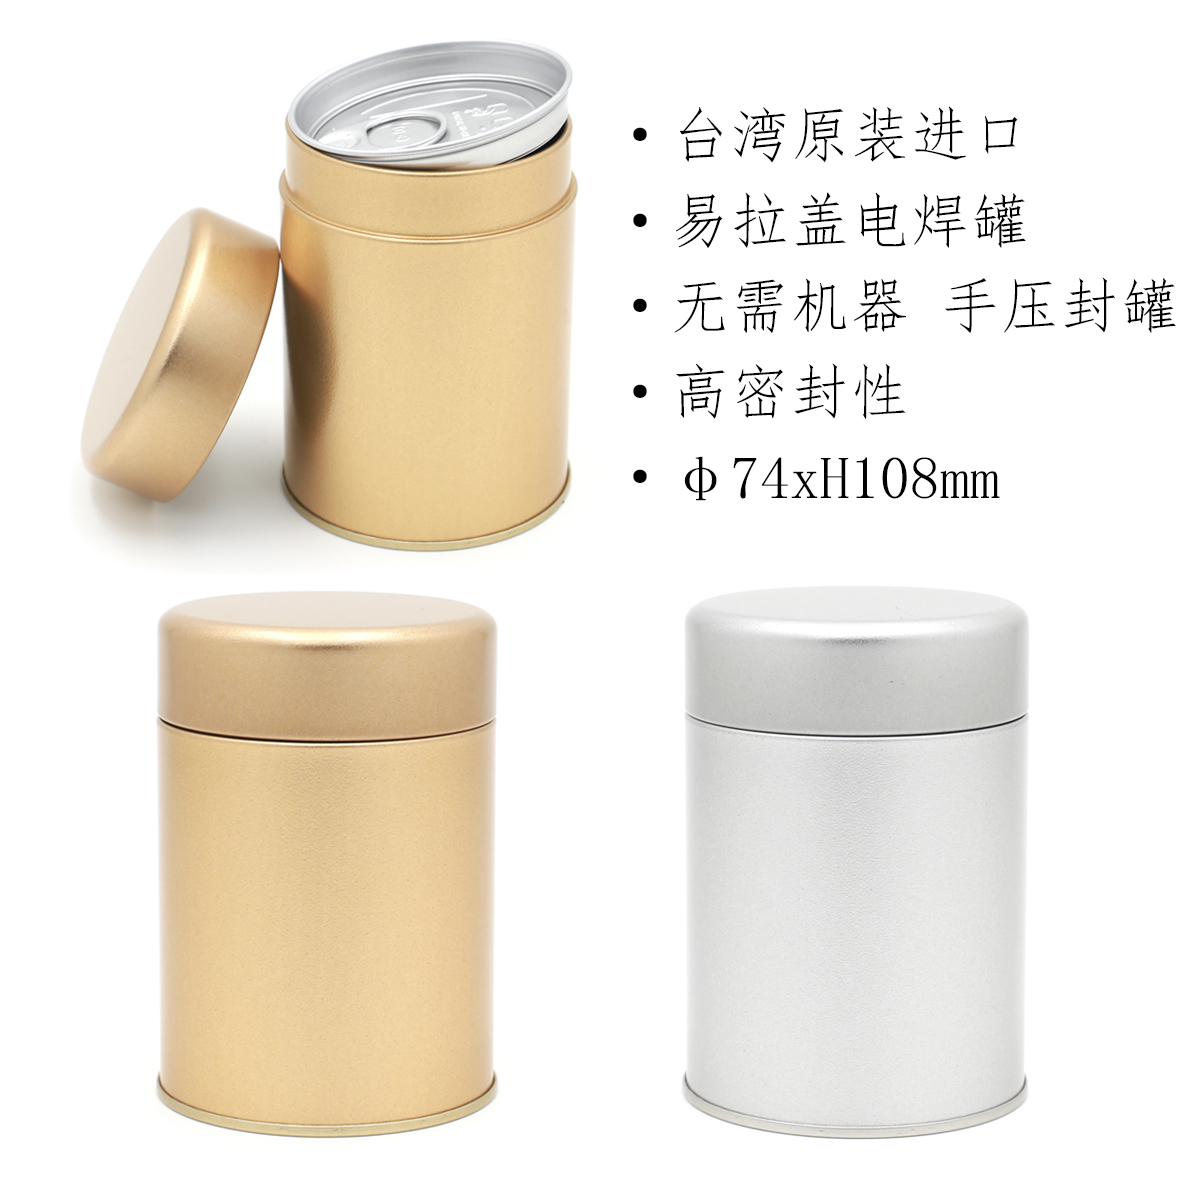 台湾原装通用台二两素面易拉罐茶叶铁罐马口铁定制LOGO 茶叶包装